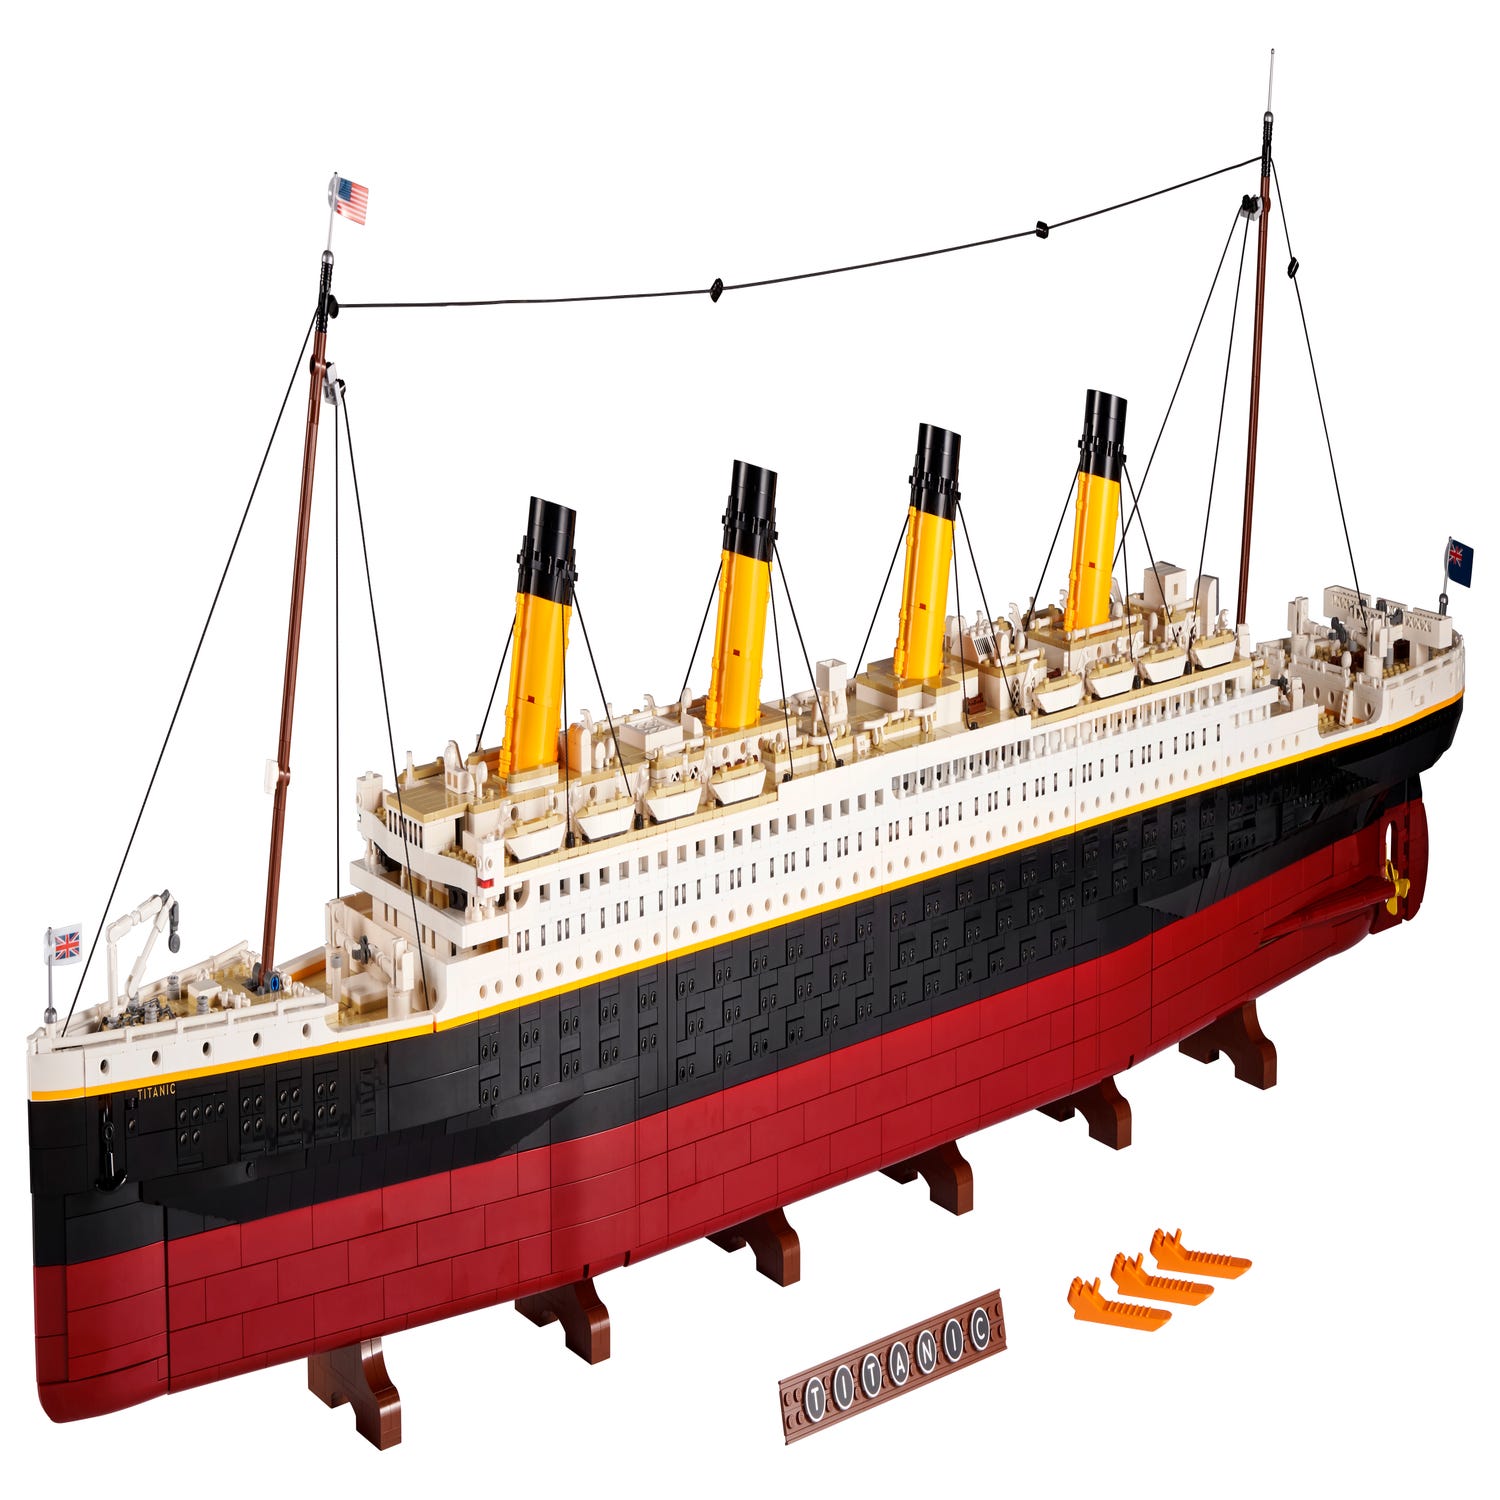 Ota selvää 48+ imagen titanic lego set